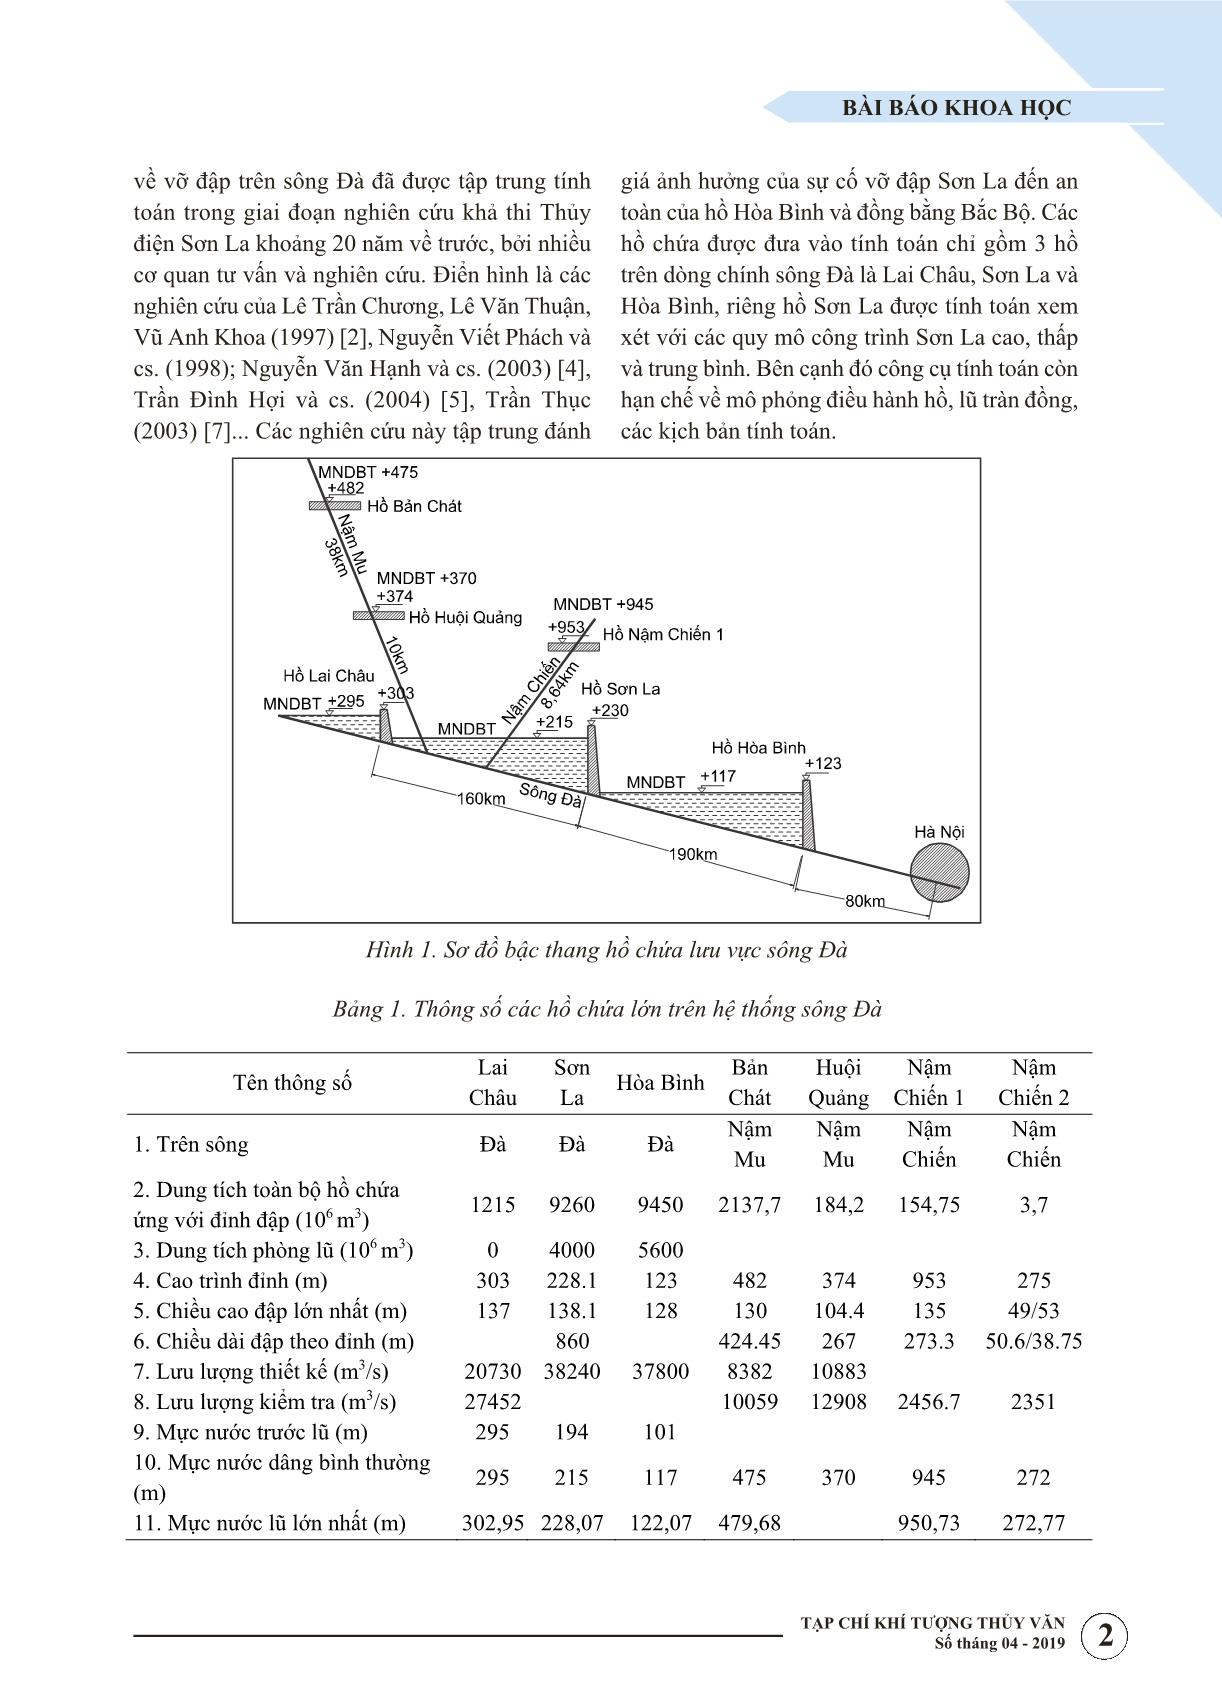 Đánh giá rủi ro cho hệ thống hồ chứa bậc thang trên sông Đà khi có sự cố vỡ đập trang 2